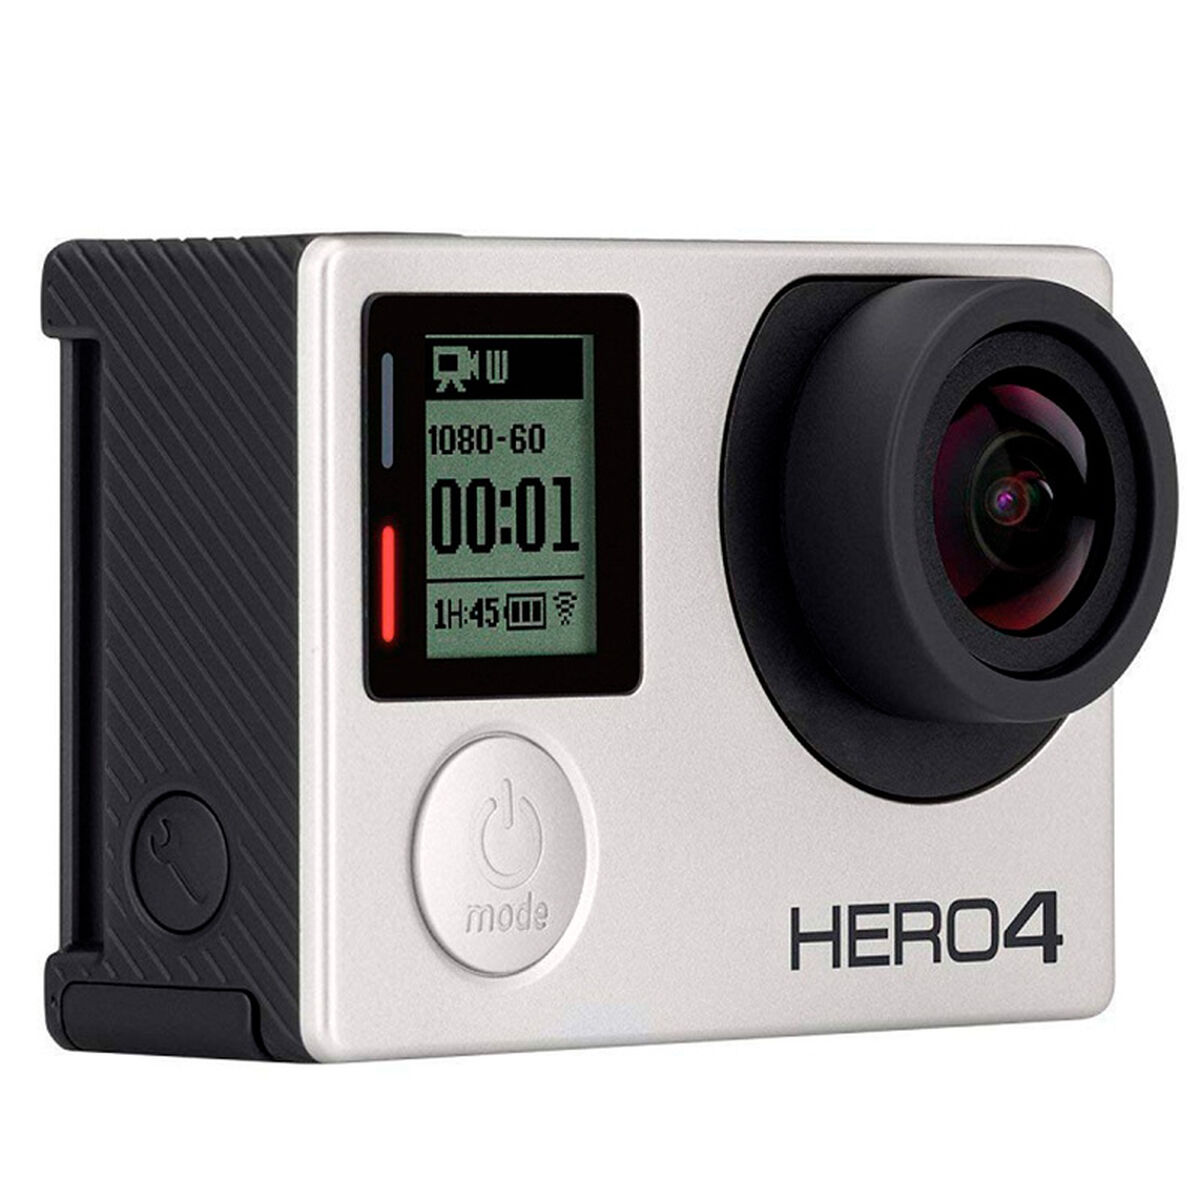 Cámara GoPro Reacondicionada HERO4 4K30 Black Edition